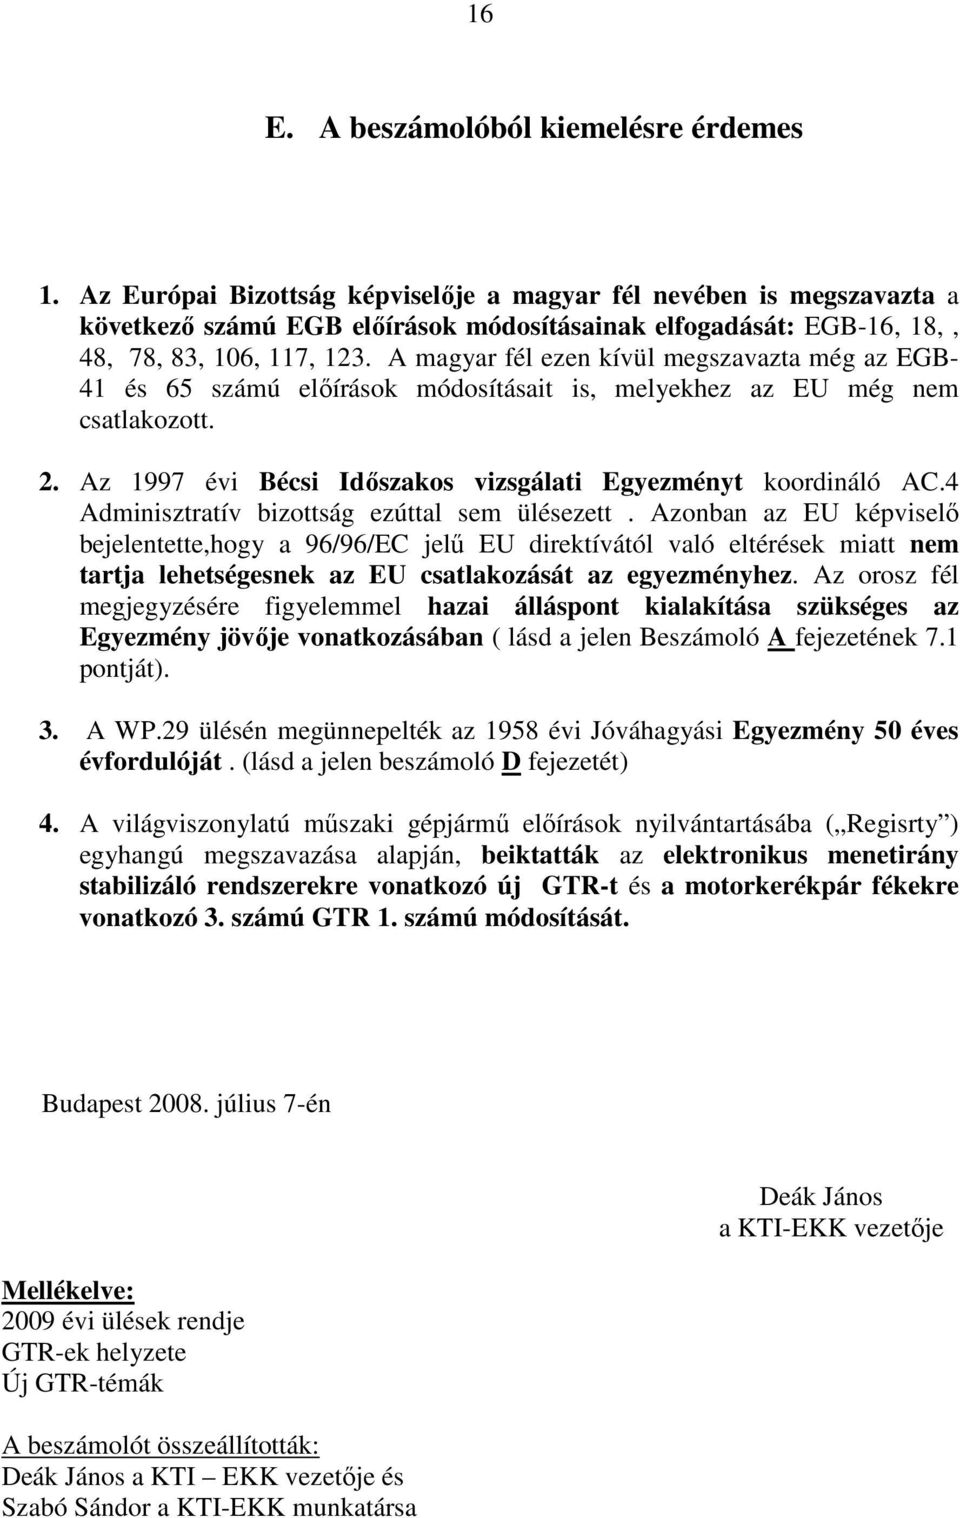 A magyar fél ezen kívül megszavazta még az EGB- 41 és 65 számú elıírások módosításait is, melyekhez az EU még nem csatlakozott. 2. Az 1997 évi Bécsi Idıszakos vizsgálati Egyezményt koordináló AC.